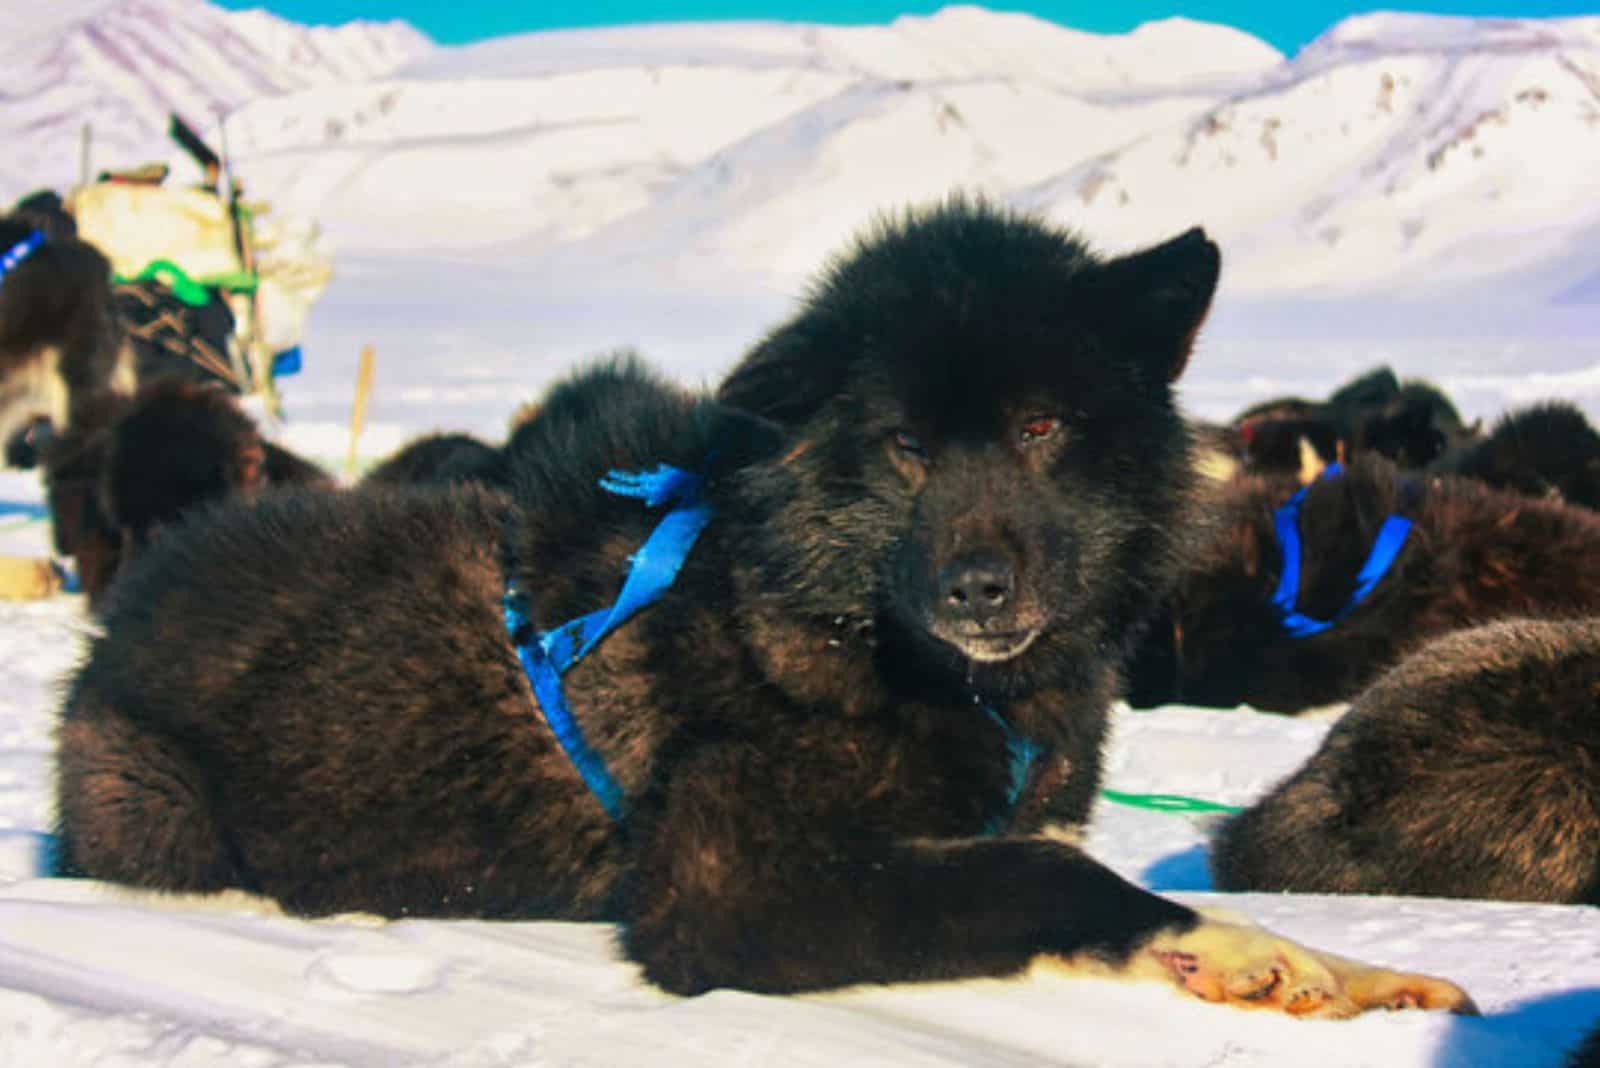 Sakhalin Husky lies on the snow